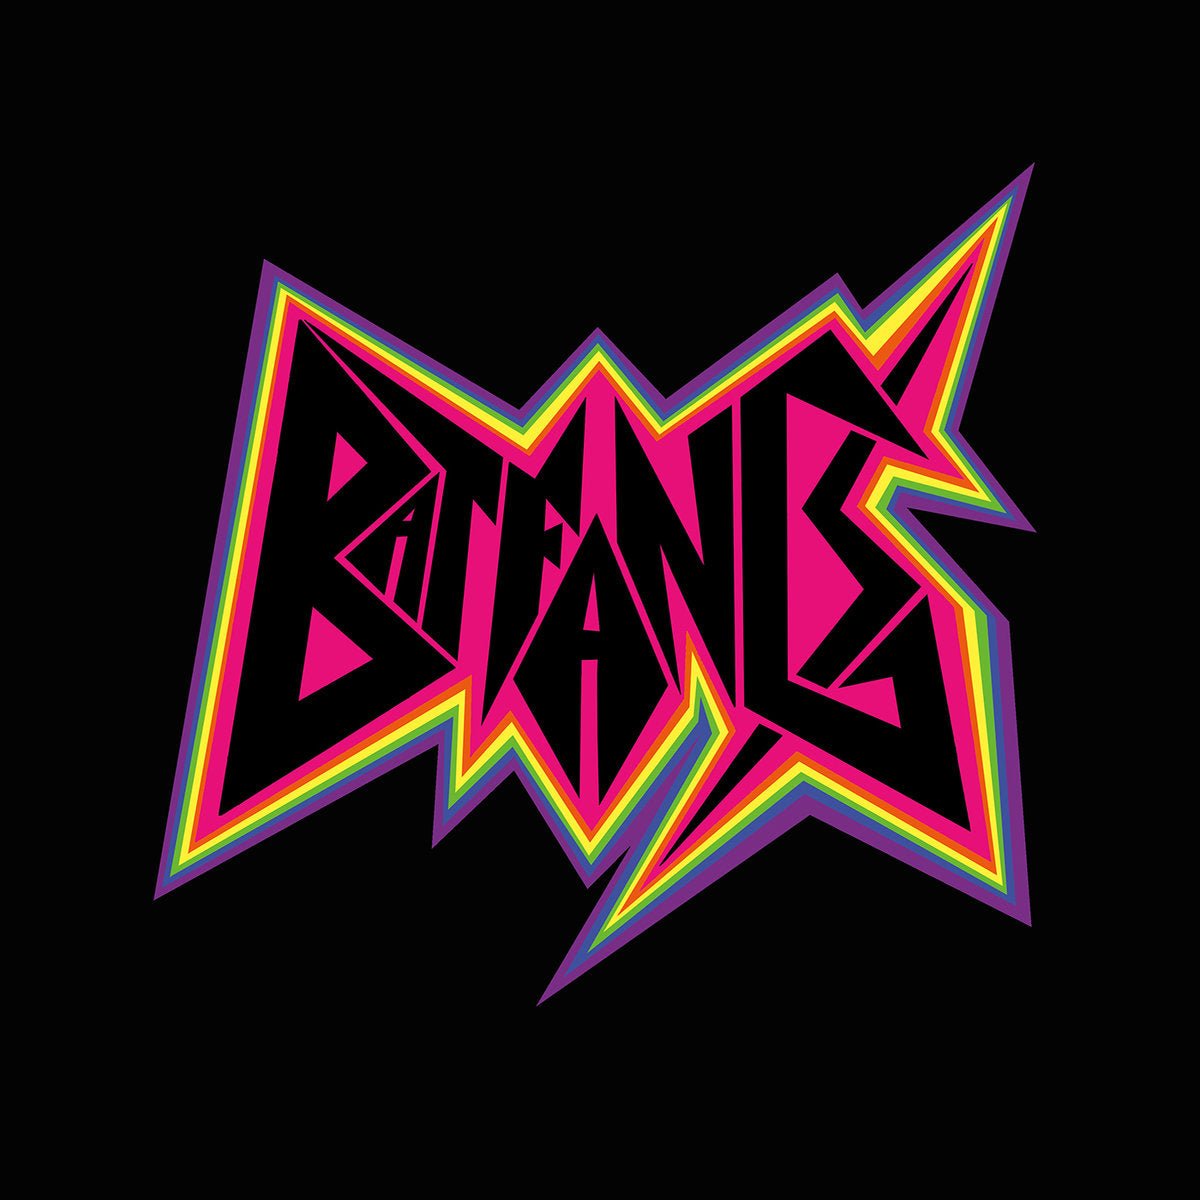 Bat Fangs - s/t LP - Vinyl - Don Giovanni